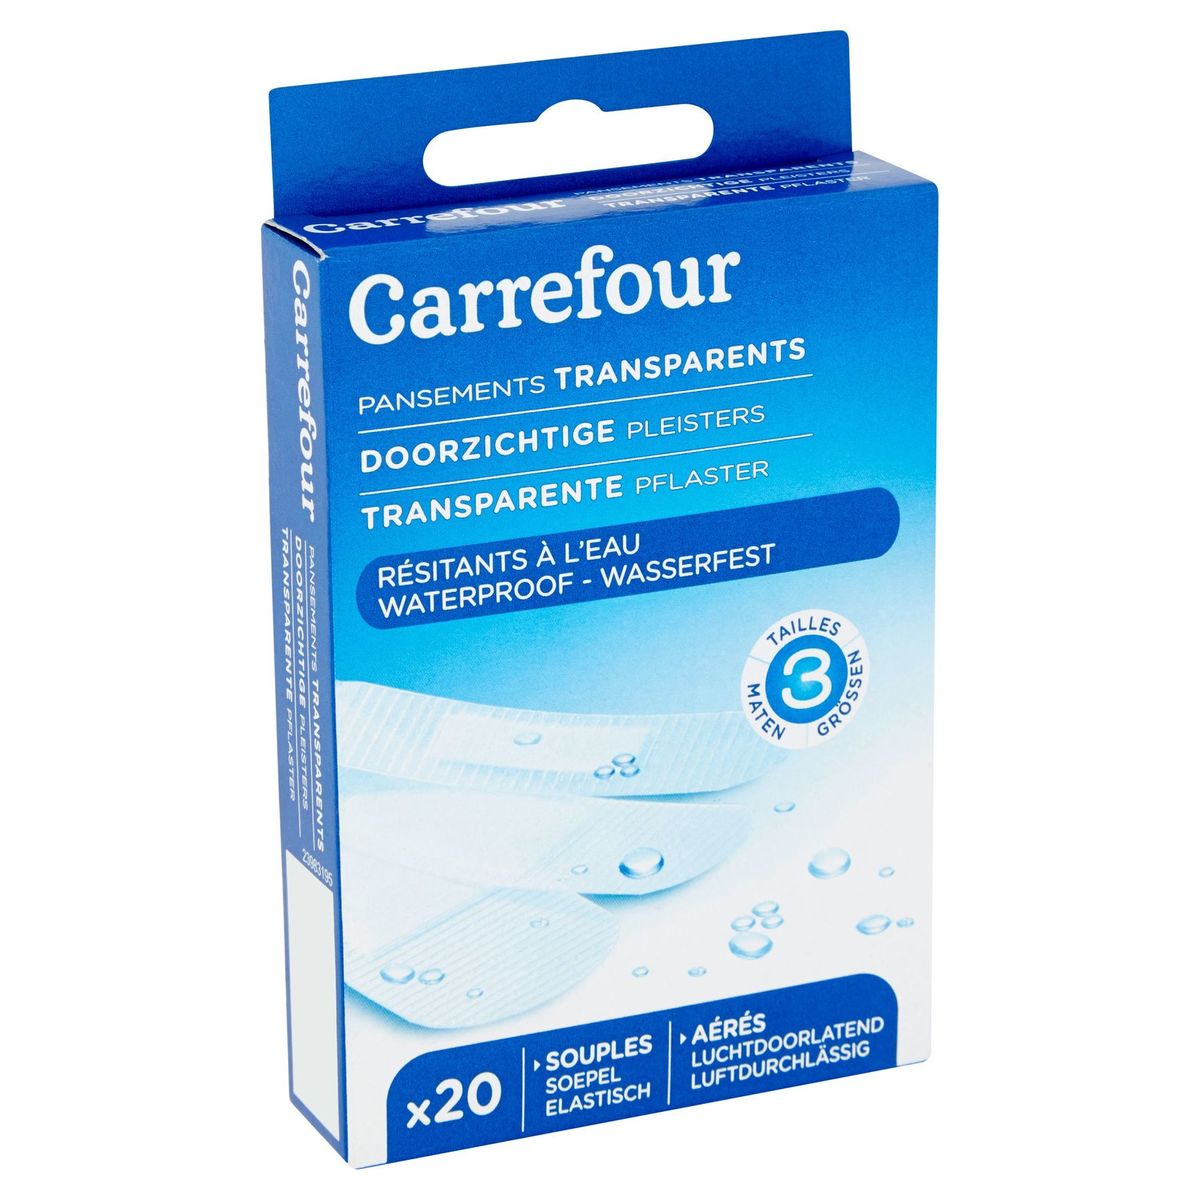 Carrefour Doorzichtige Pleisters Waterproof x 20